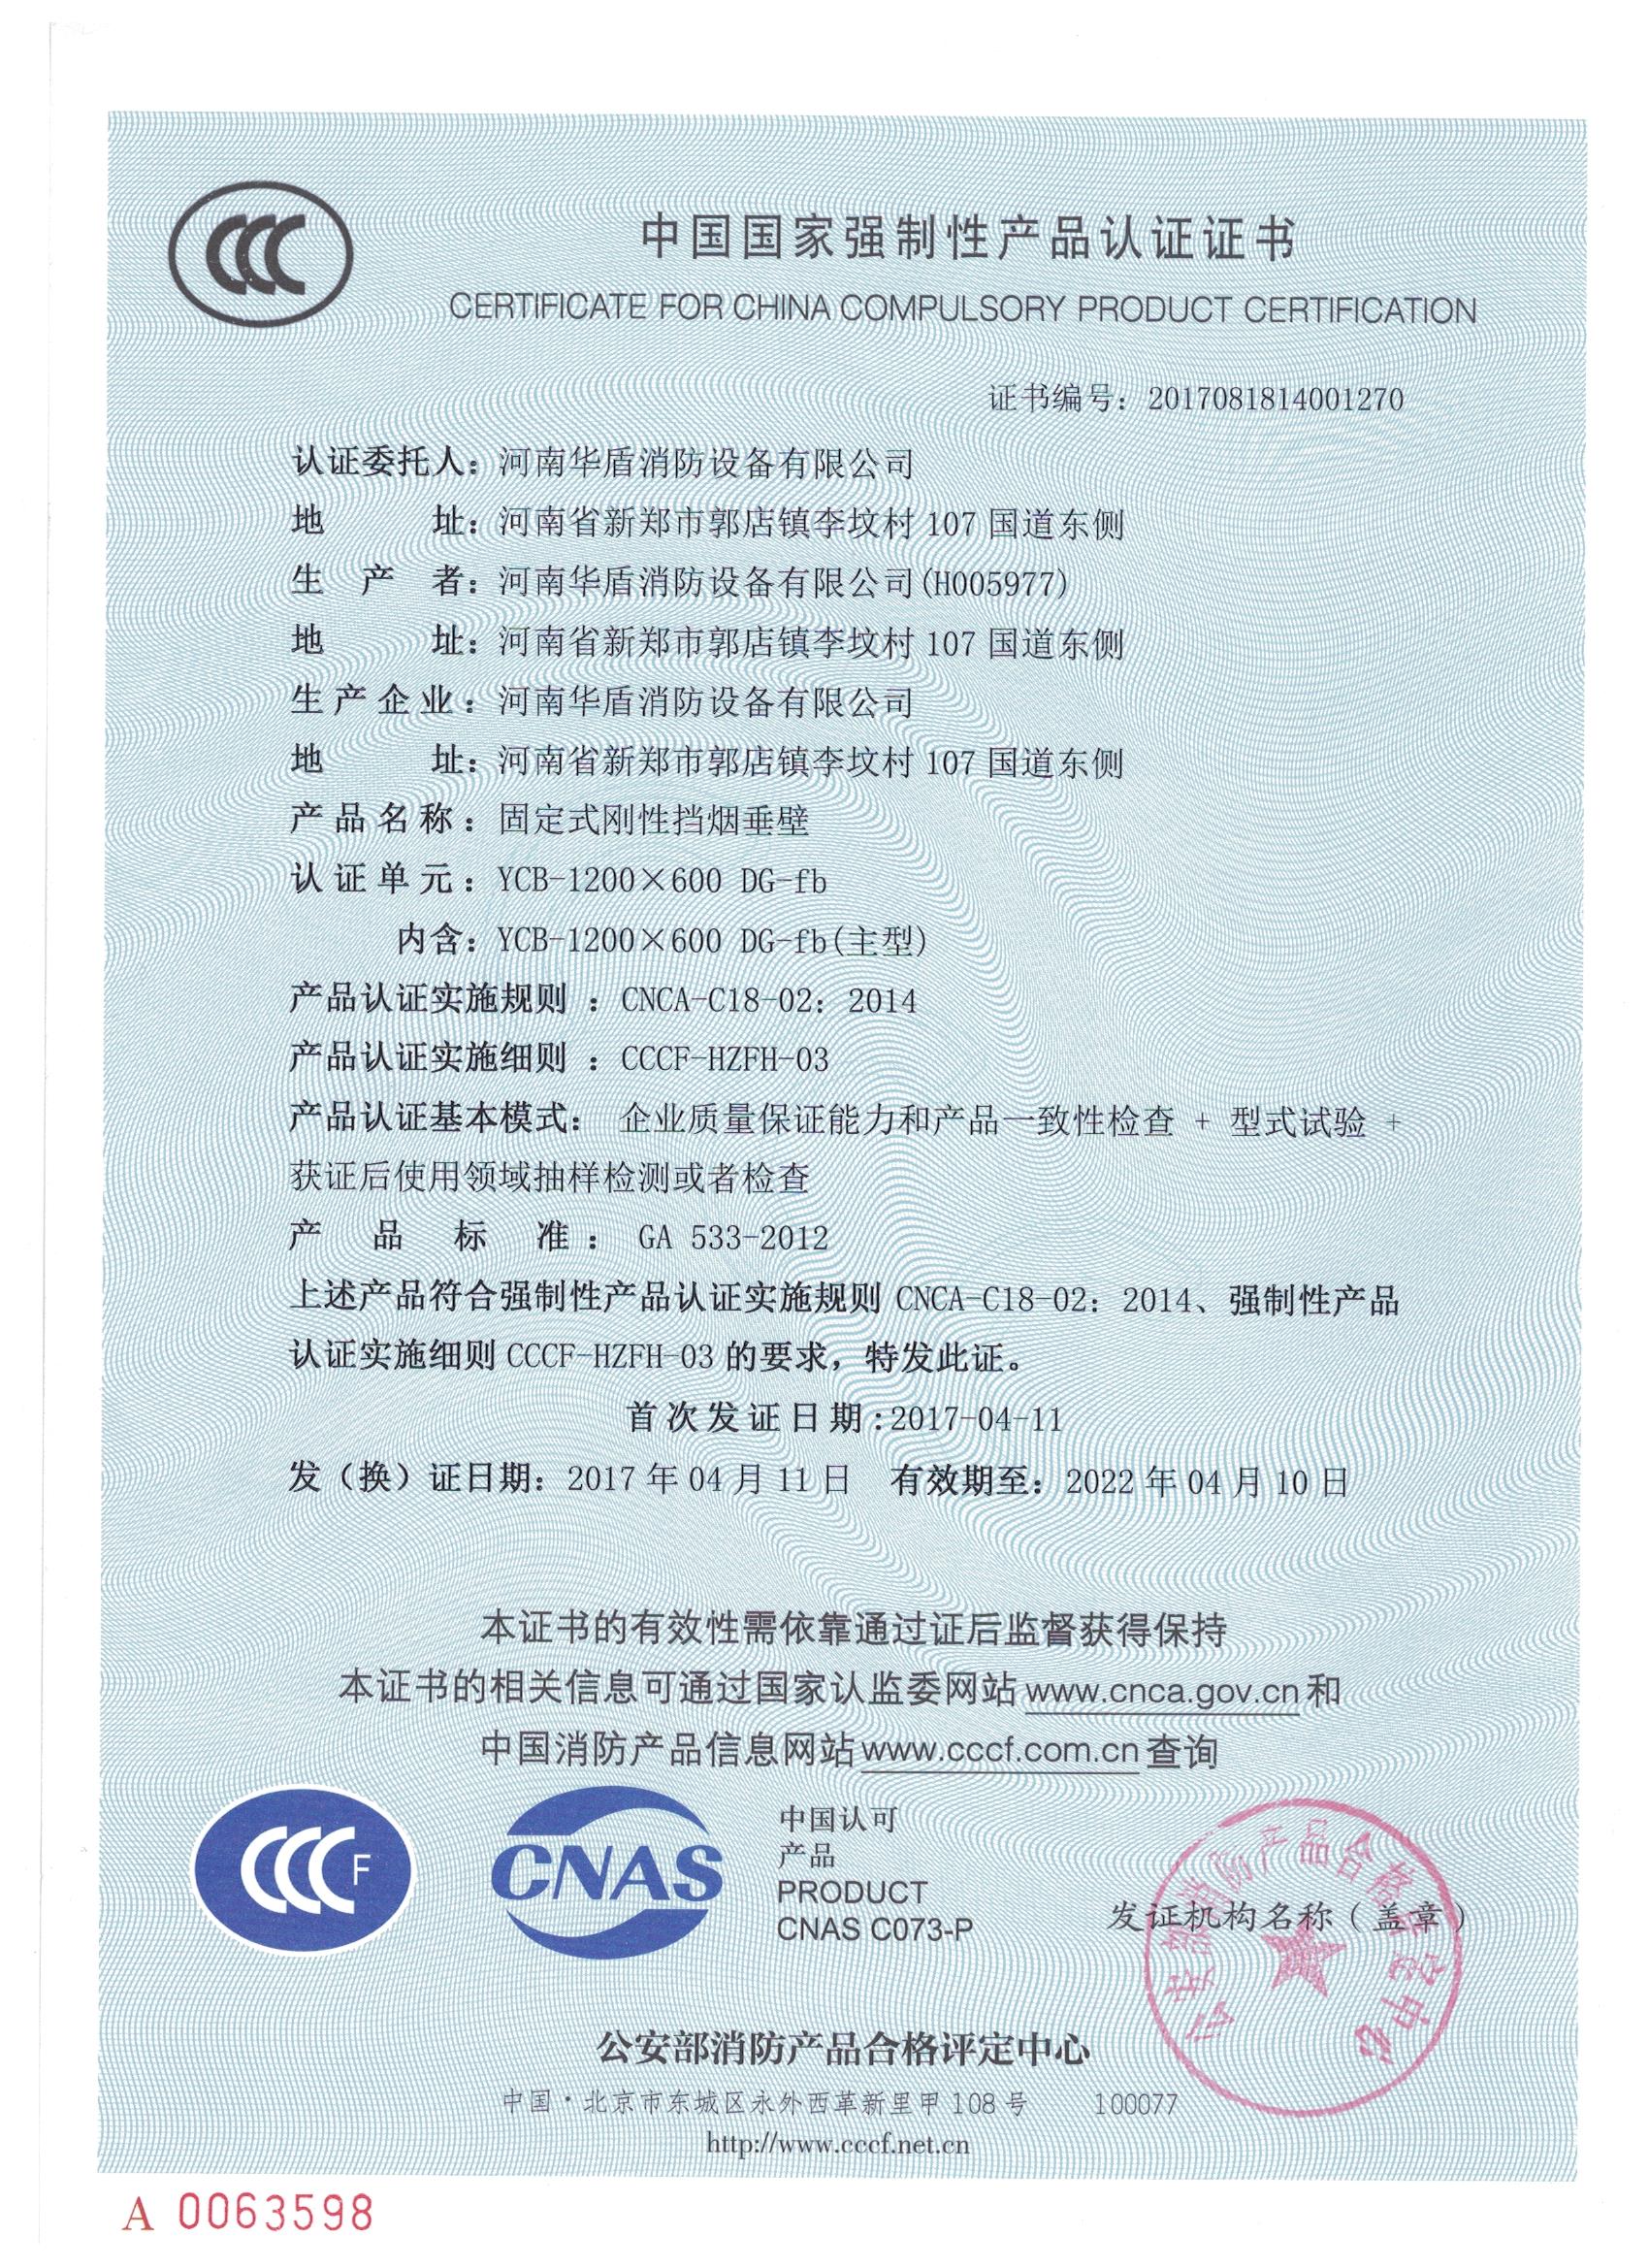 山西YCB-1000X600 DG-fd-3C证书/检验报告